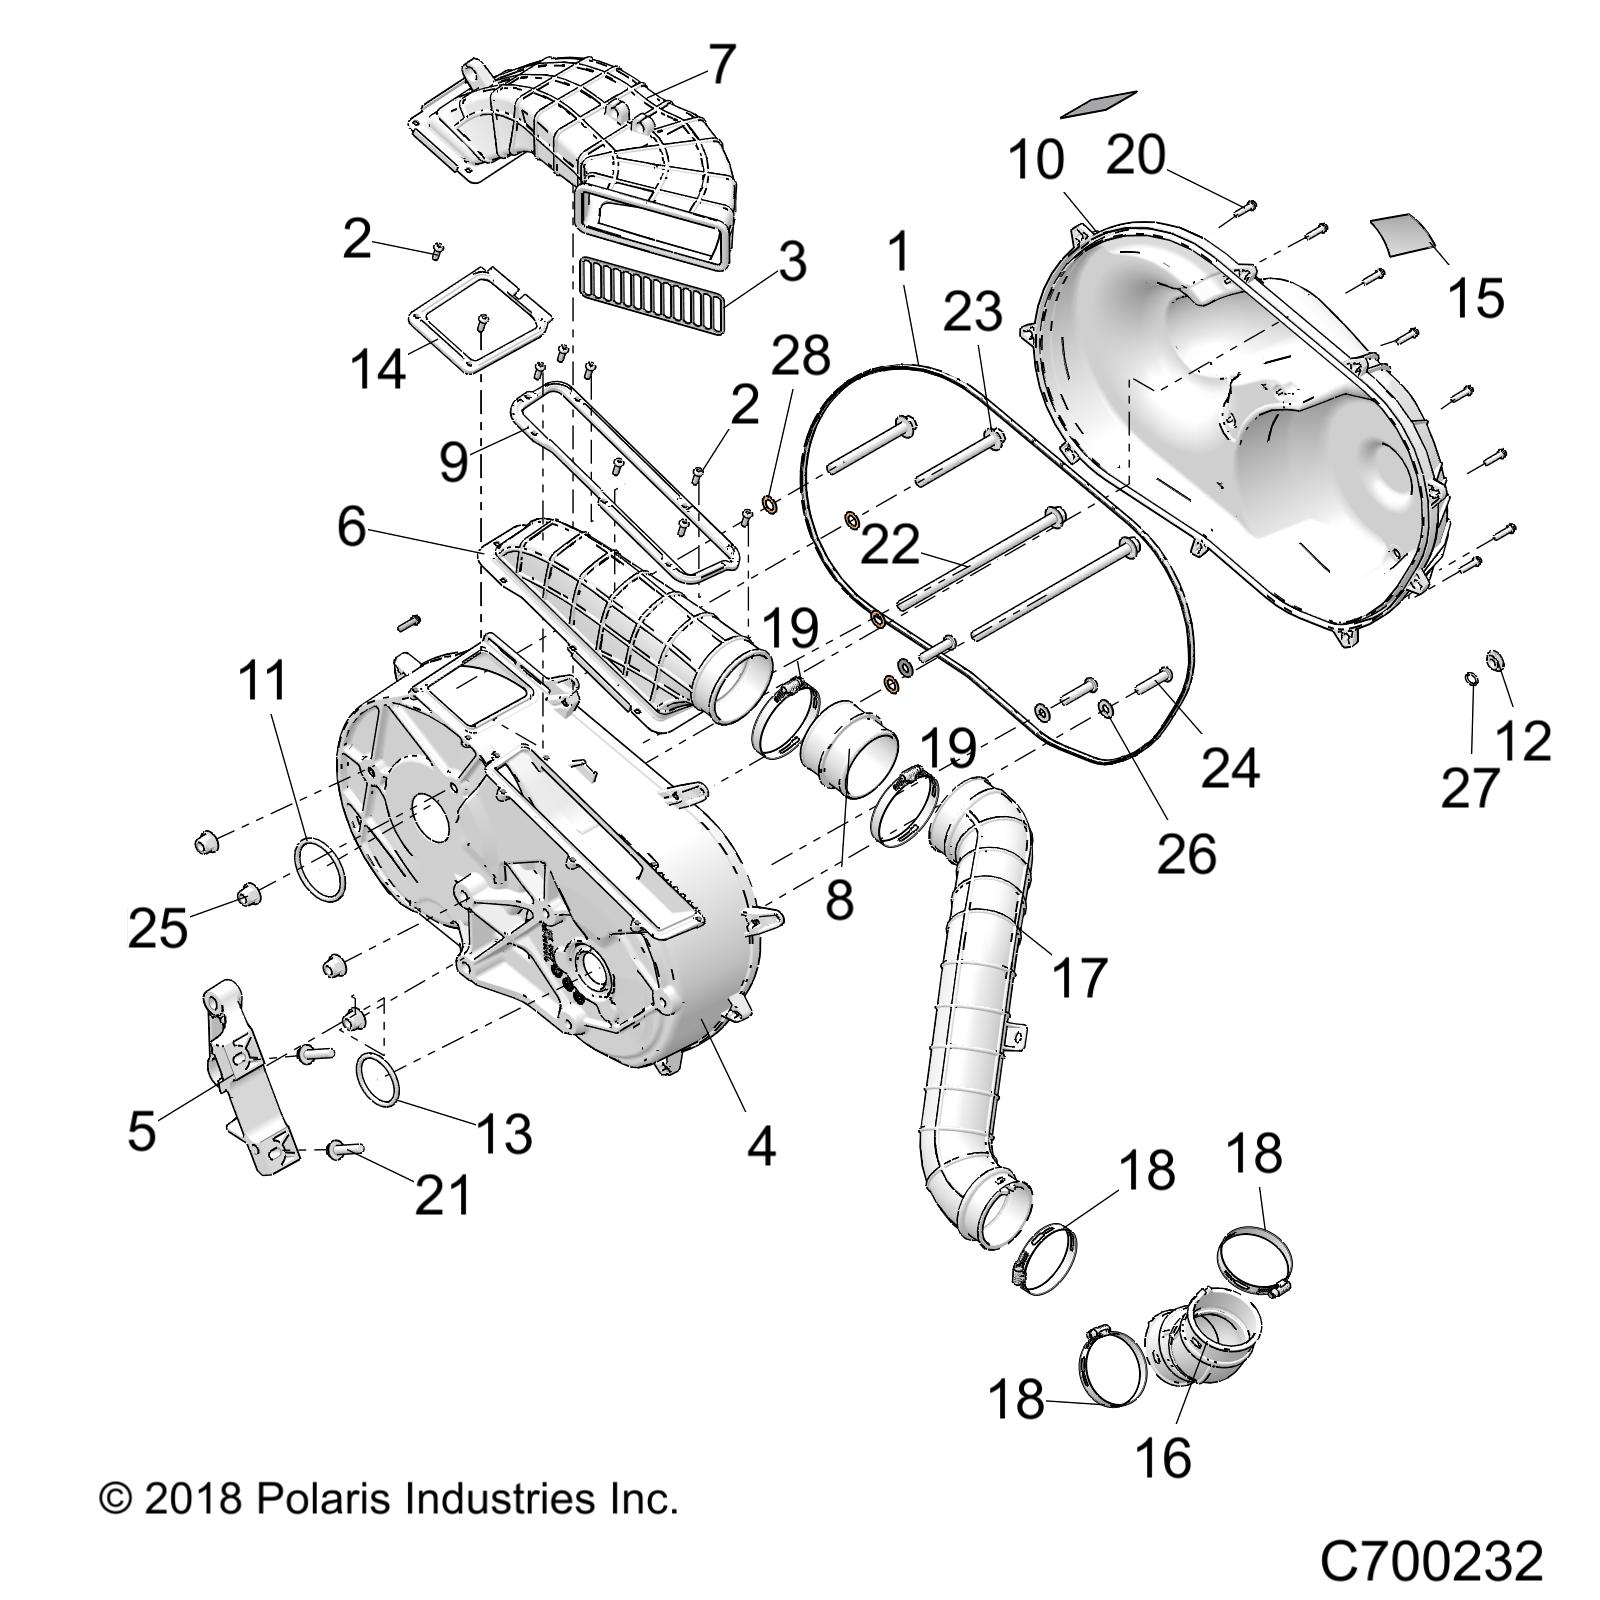 Foto diagrama Polaris que contem a peça 5417193